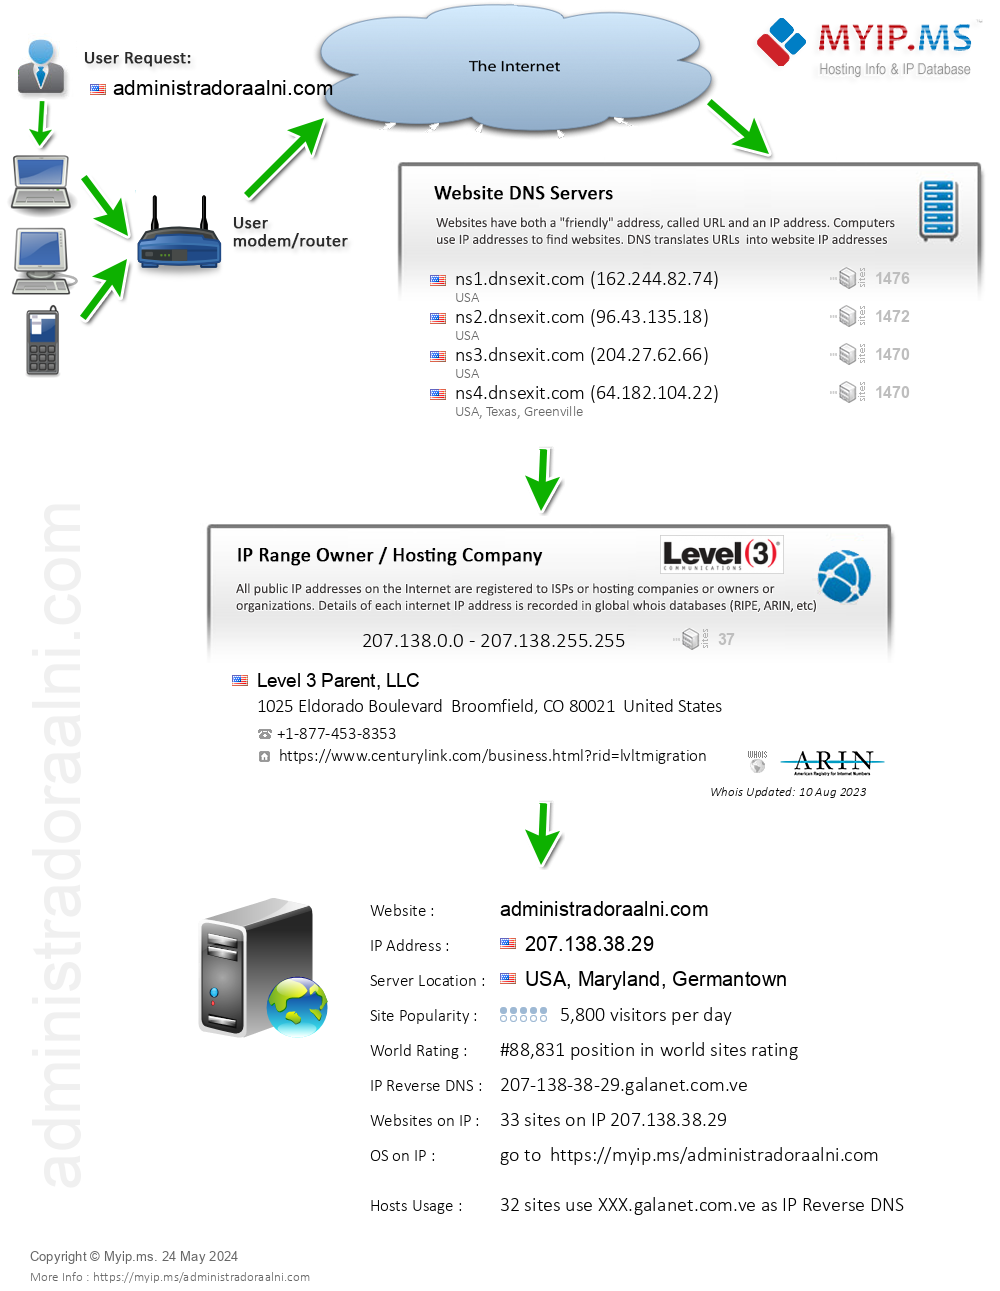 Administradoraalni.com - Website Hosting Visual IP Diagram